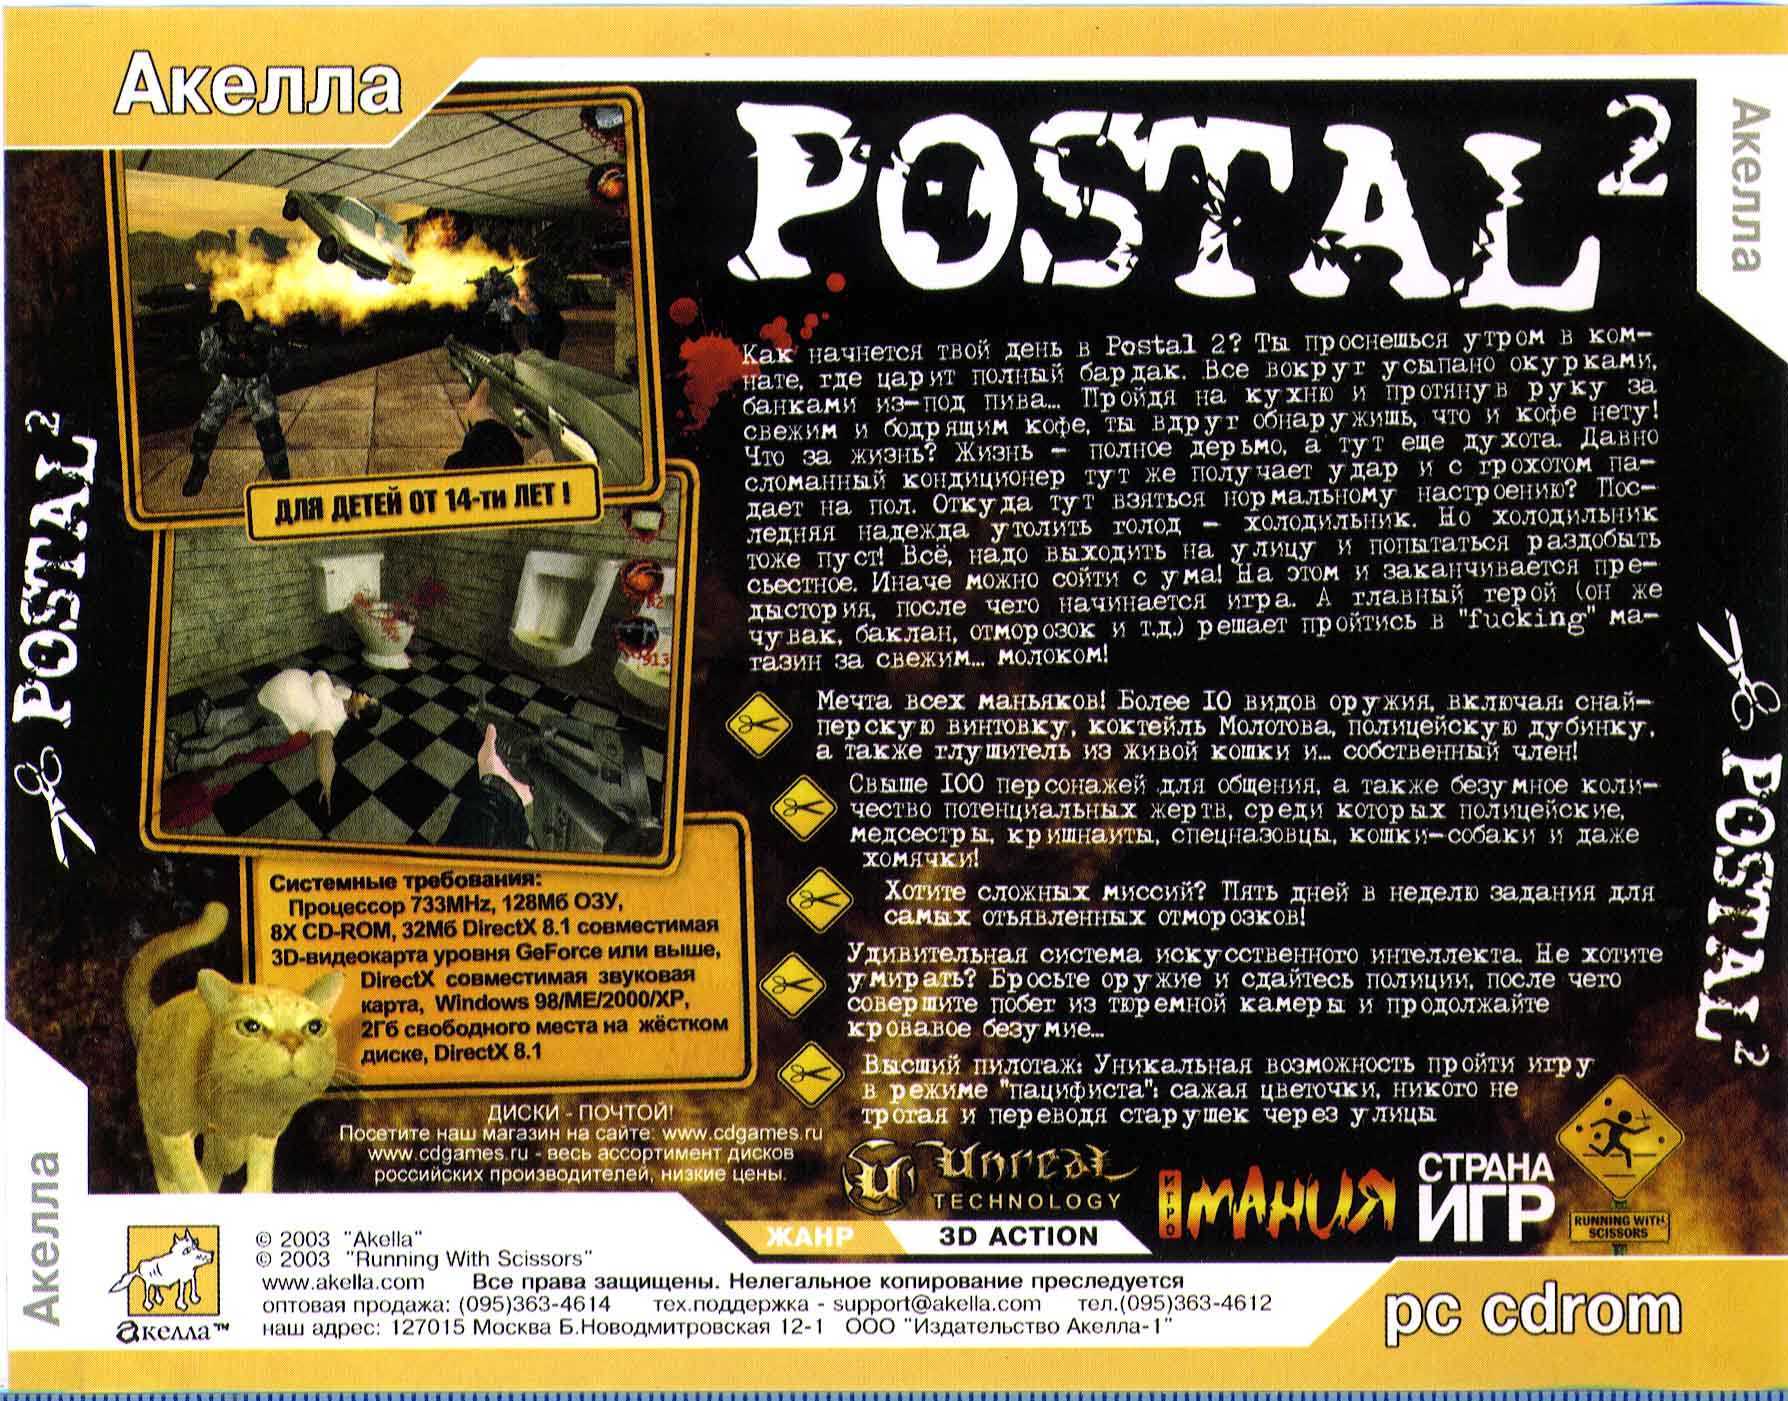 Postal 2 awp delete review скачать на торрент фото 56